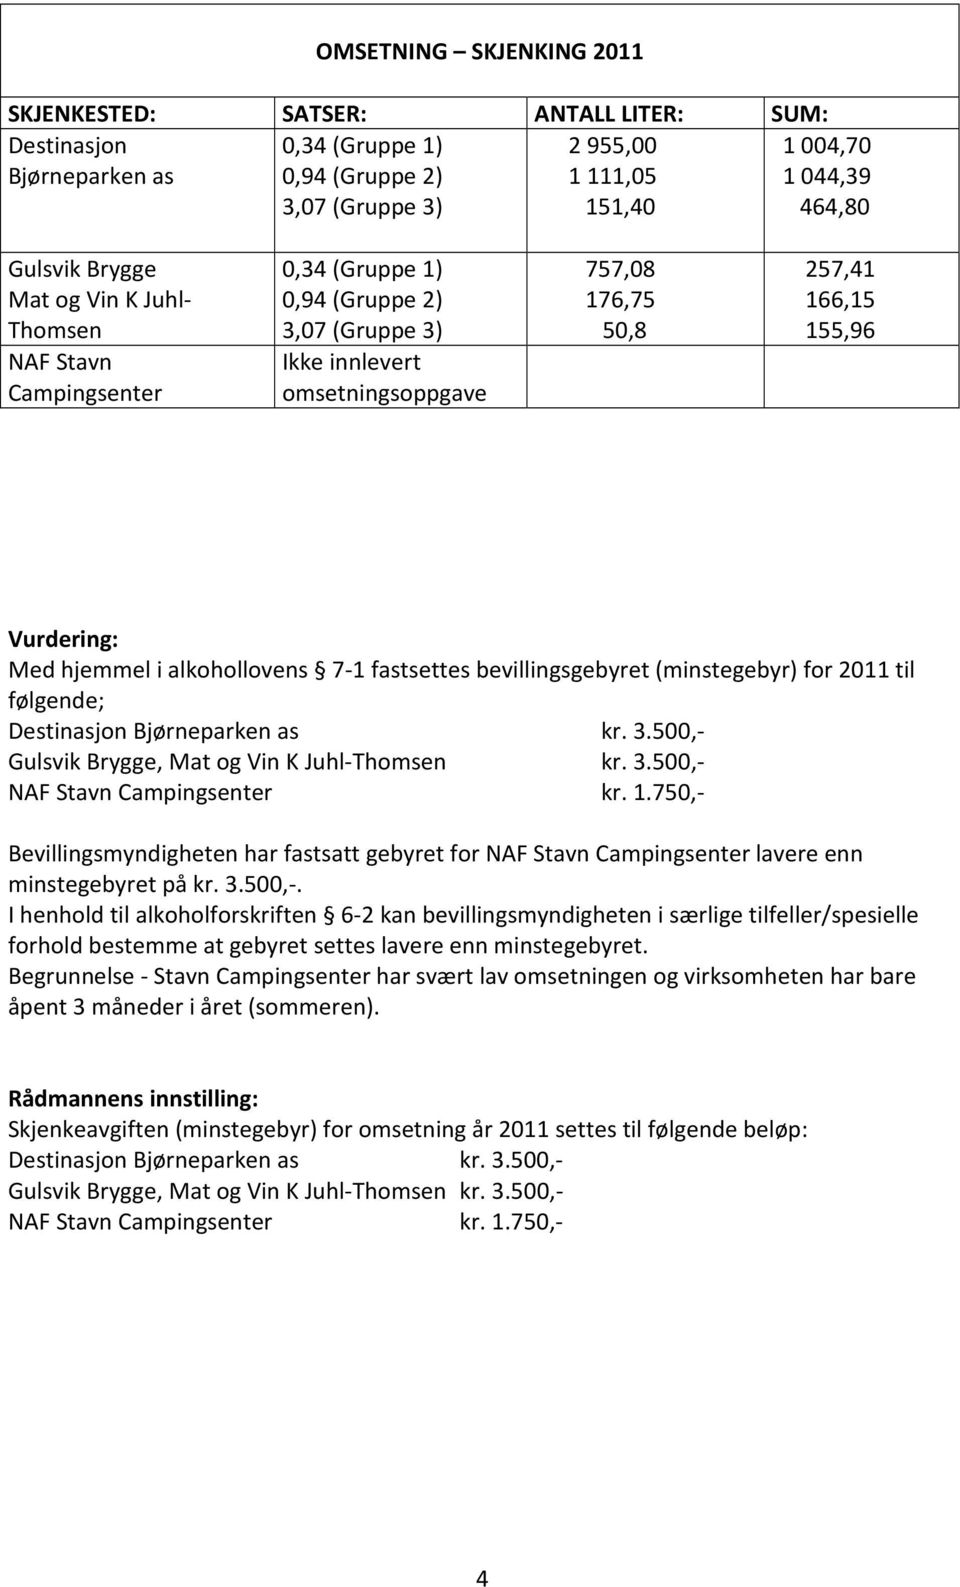 hjemmel i alkohollovens 7-1 fastsettes bevillingsgebyret (minstegebyr) for 2011 til følgende; Destinasjon Bjørneparken as kr. 3.500,- Gulsvik Brygge, Mat og Vin K Juhl-Thomsen kr. 3.500,- NAF Stavn Campingsenter kr.